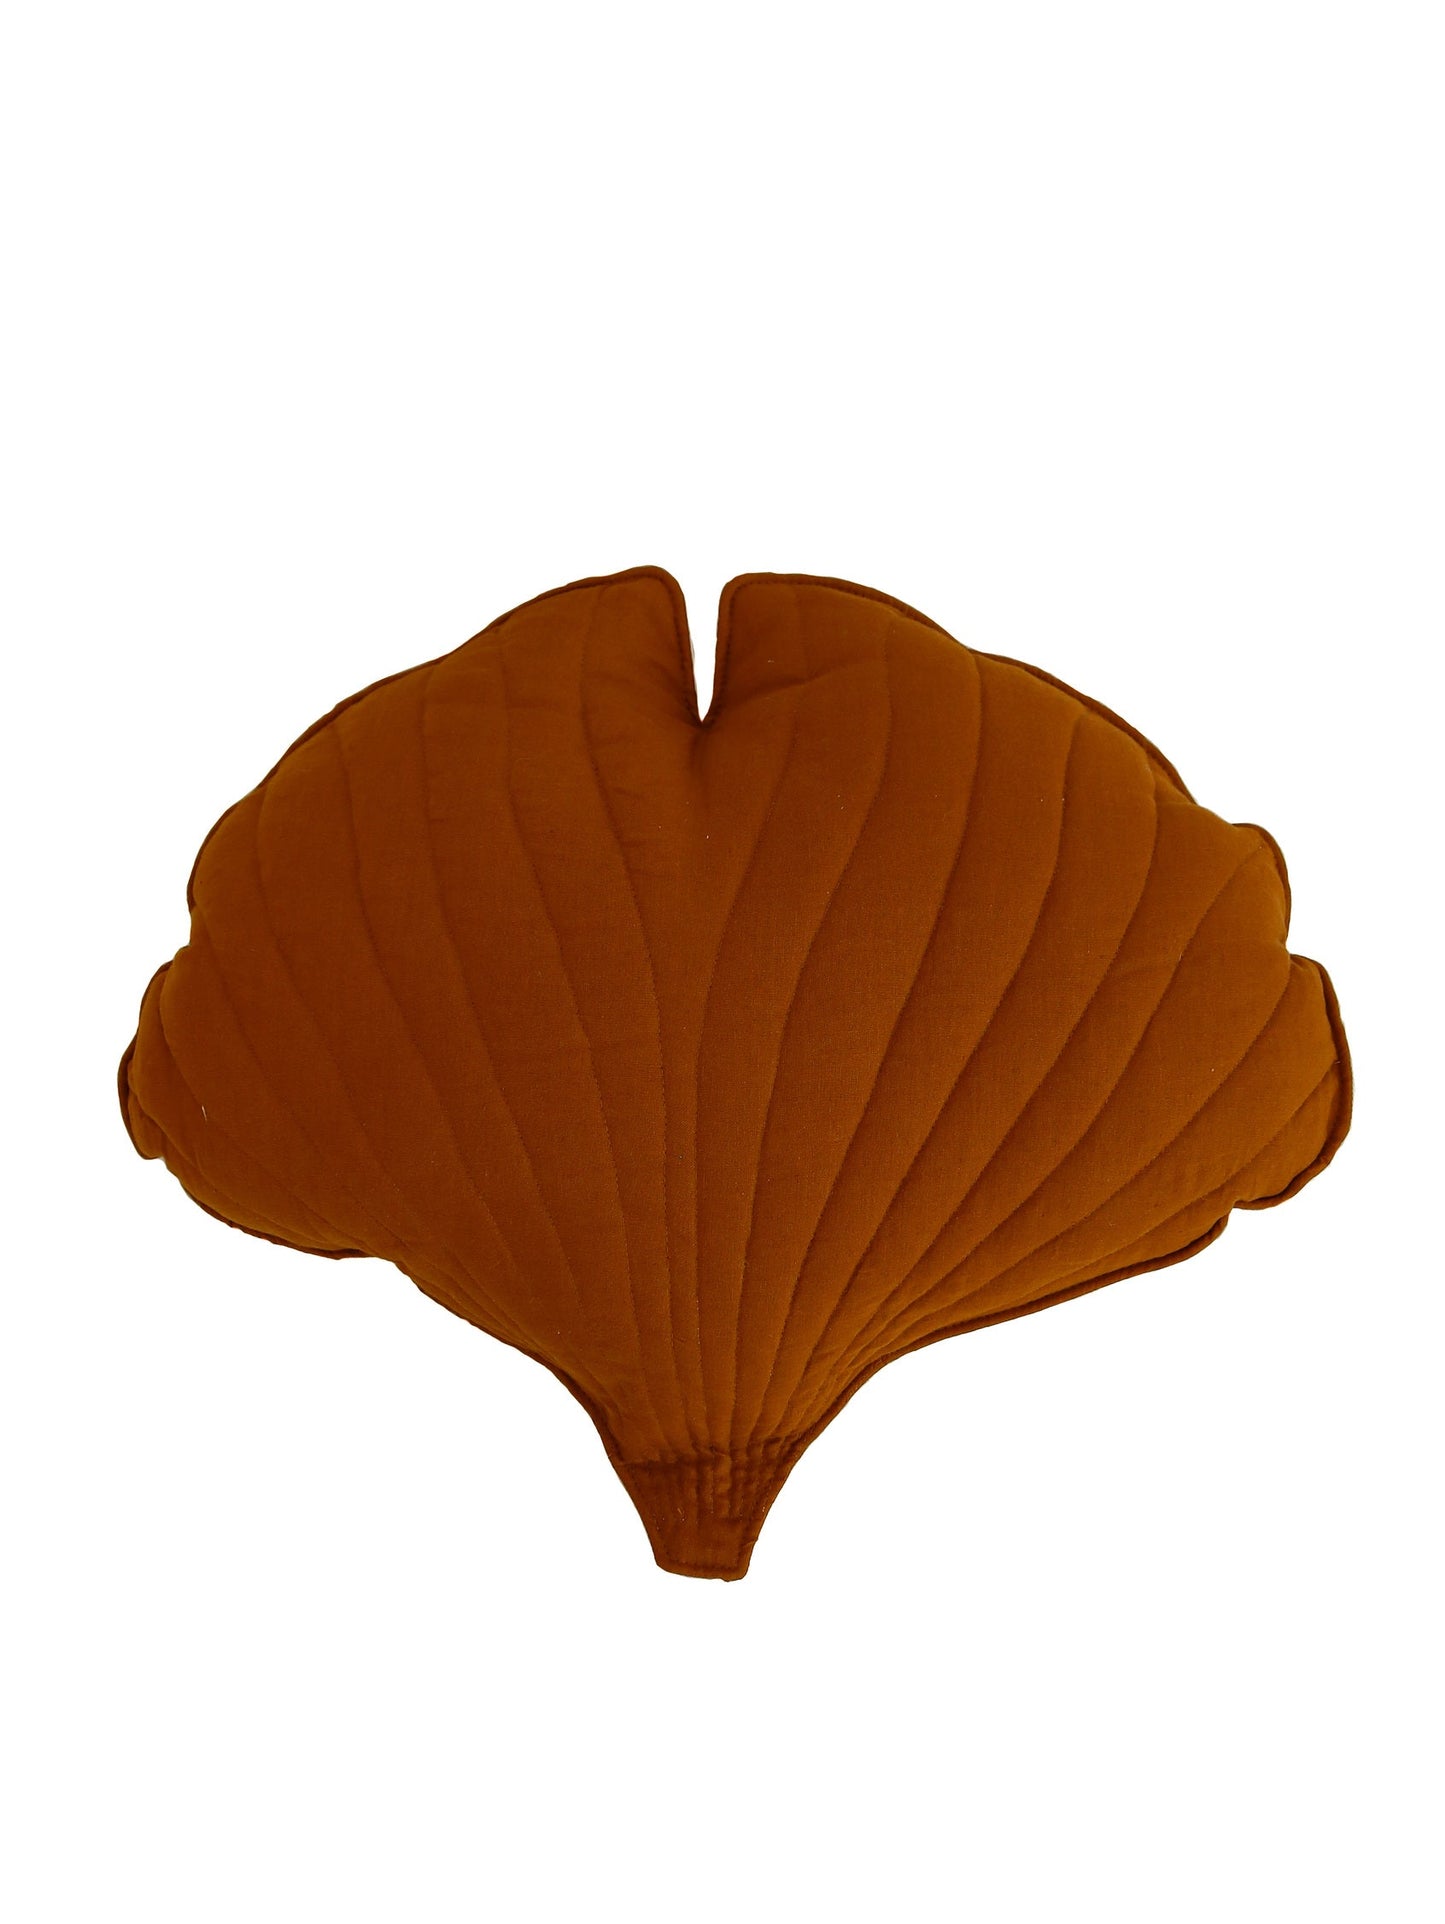 Linen “Caramel” Ginkgo Leaf Pillow